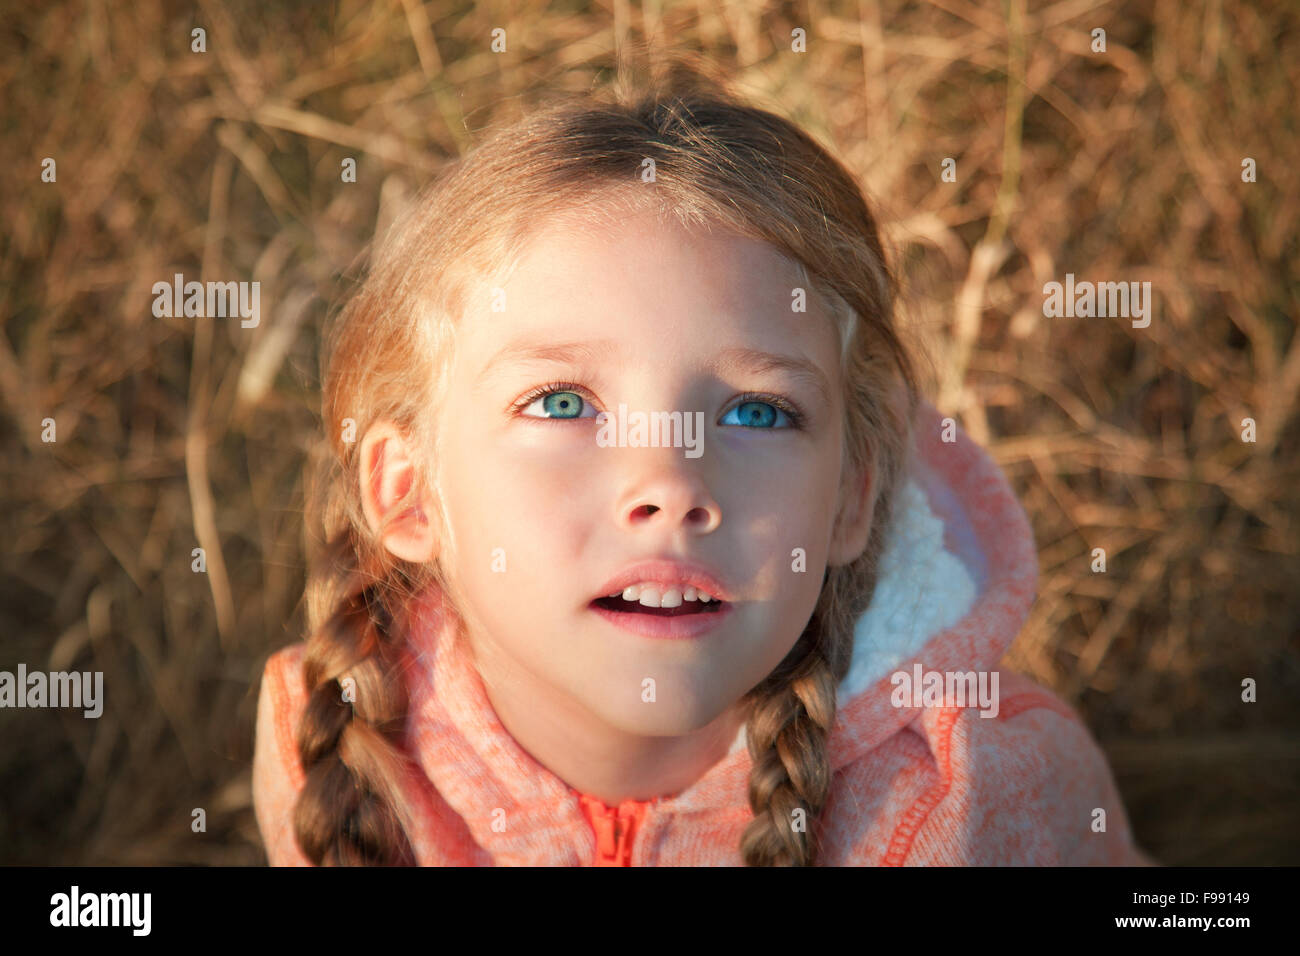 Ritratto di una bambina con gli occhi blu e pigtail Foto Stock